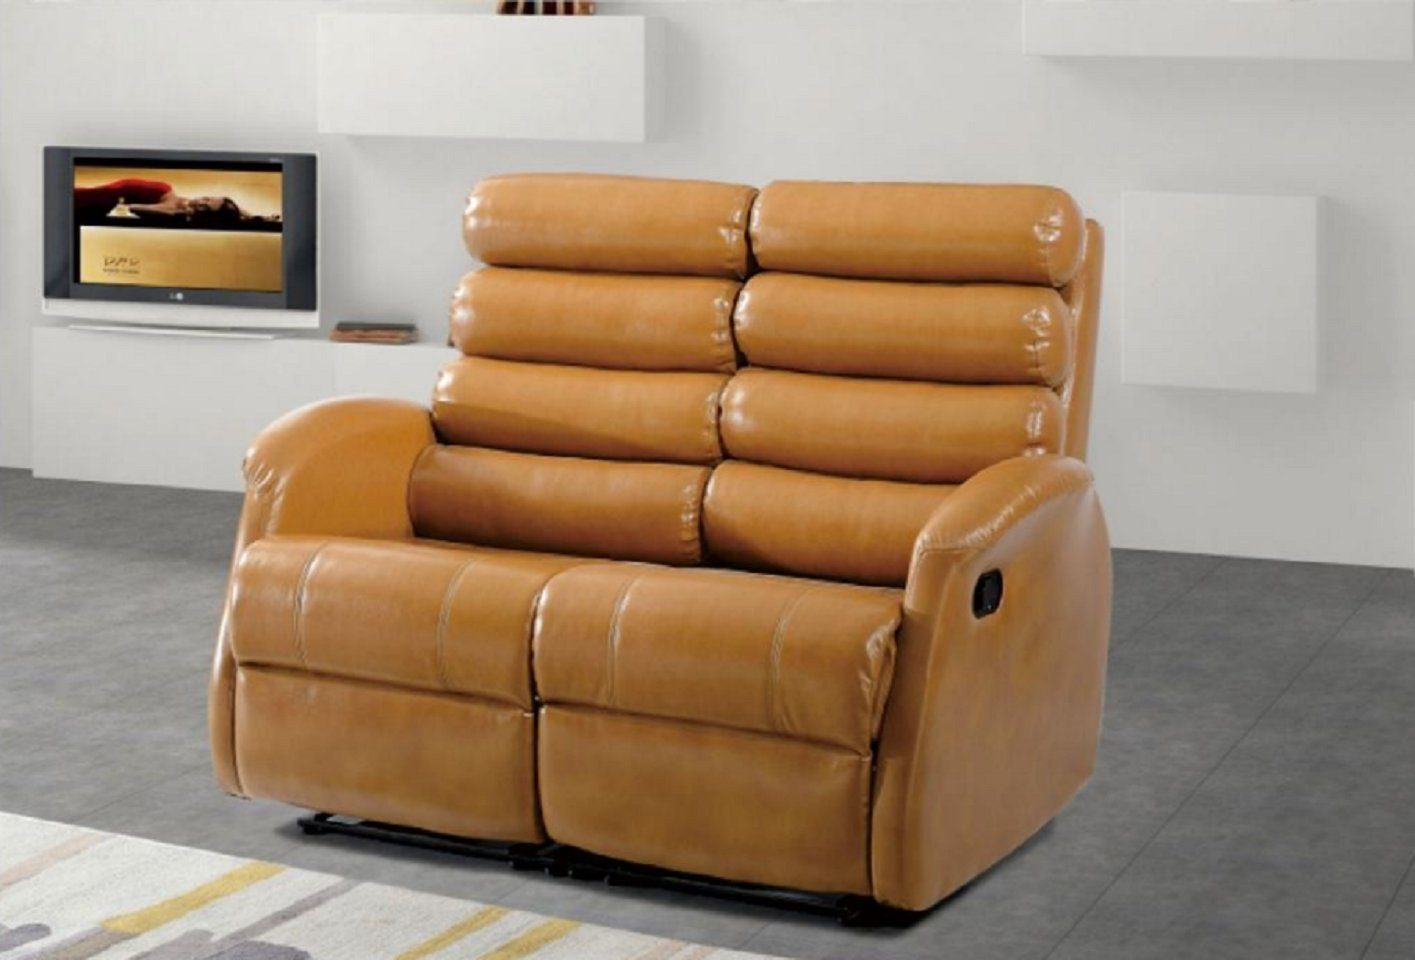 JVmoebel 2-Sitzer Moderne Zweisitzer Couch Polster Design Wohnzimmer Möbel Braun, 1 Teile, Made in Europe